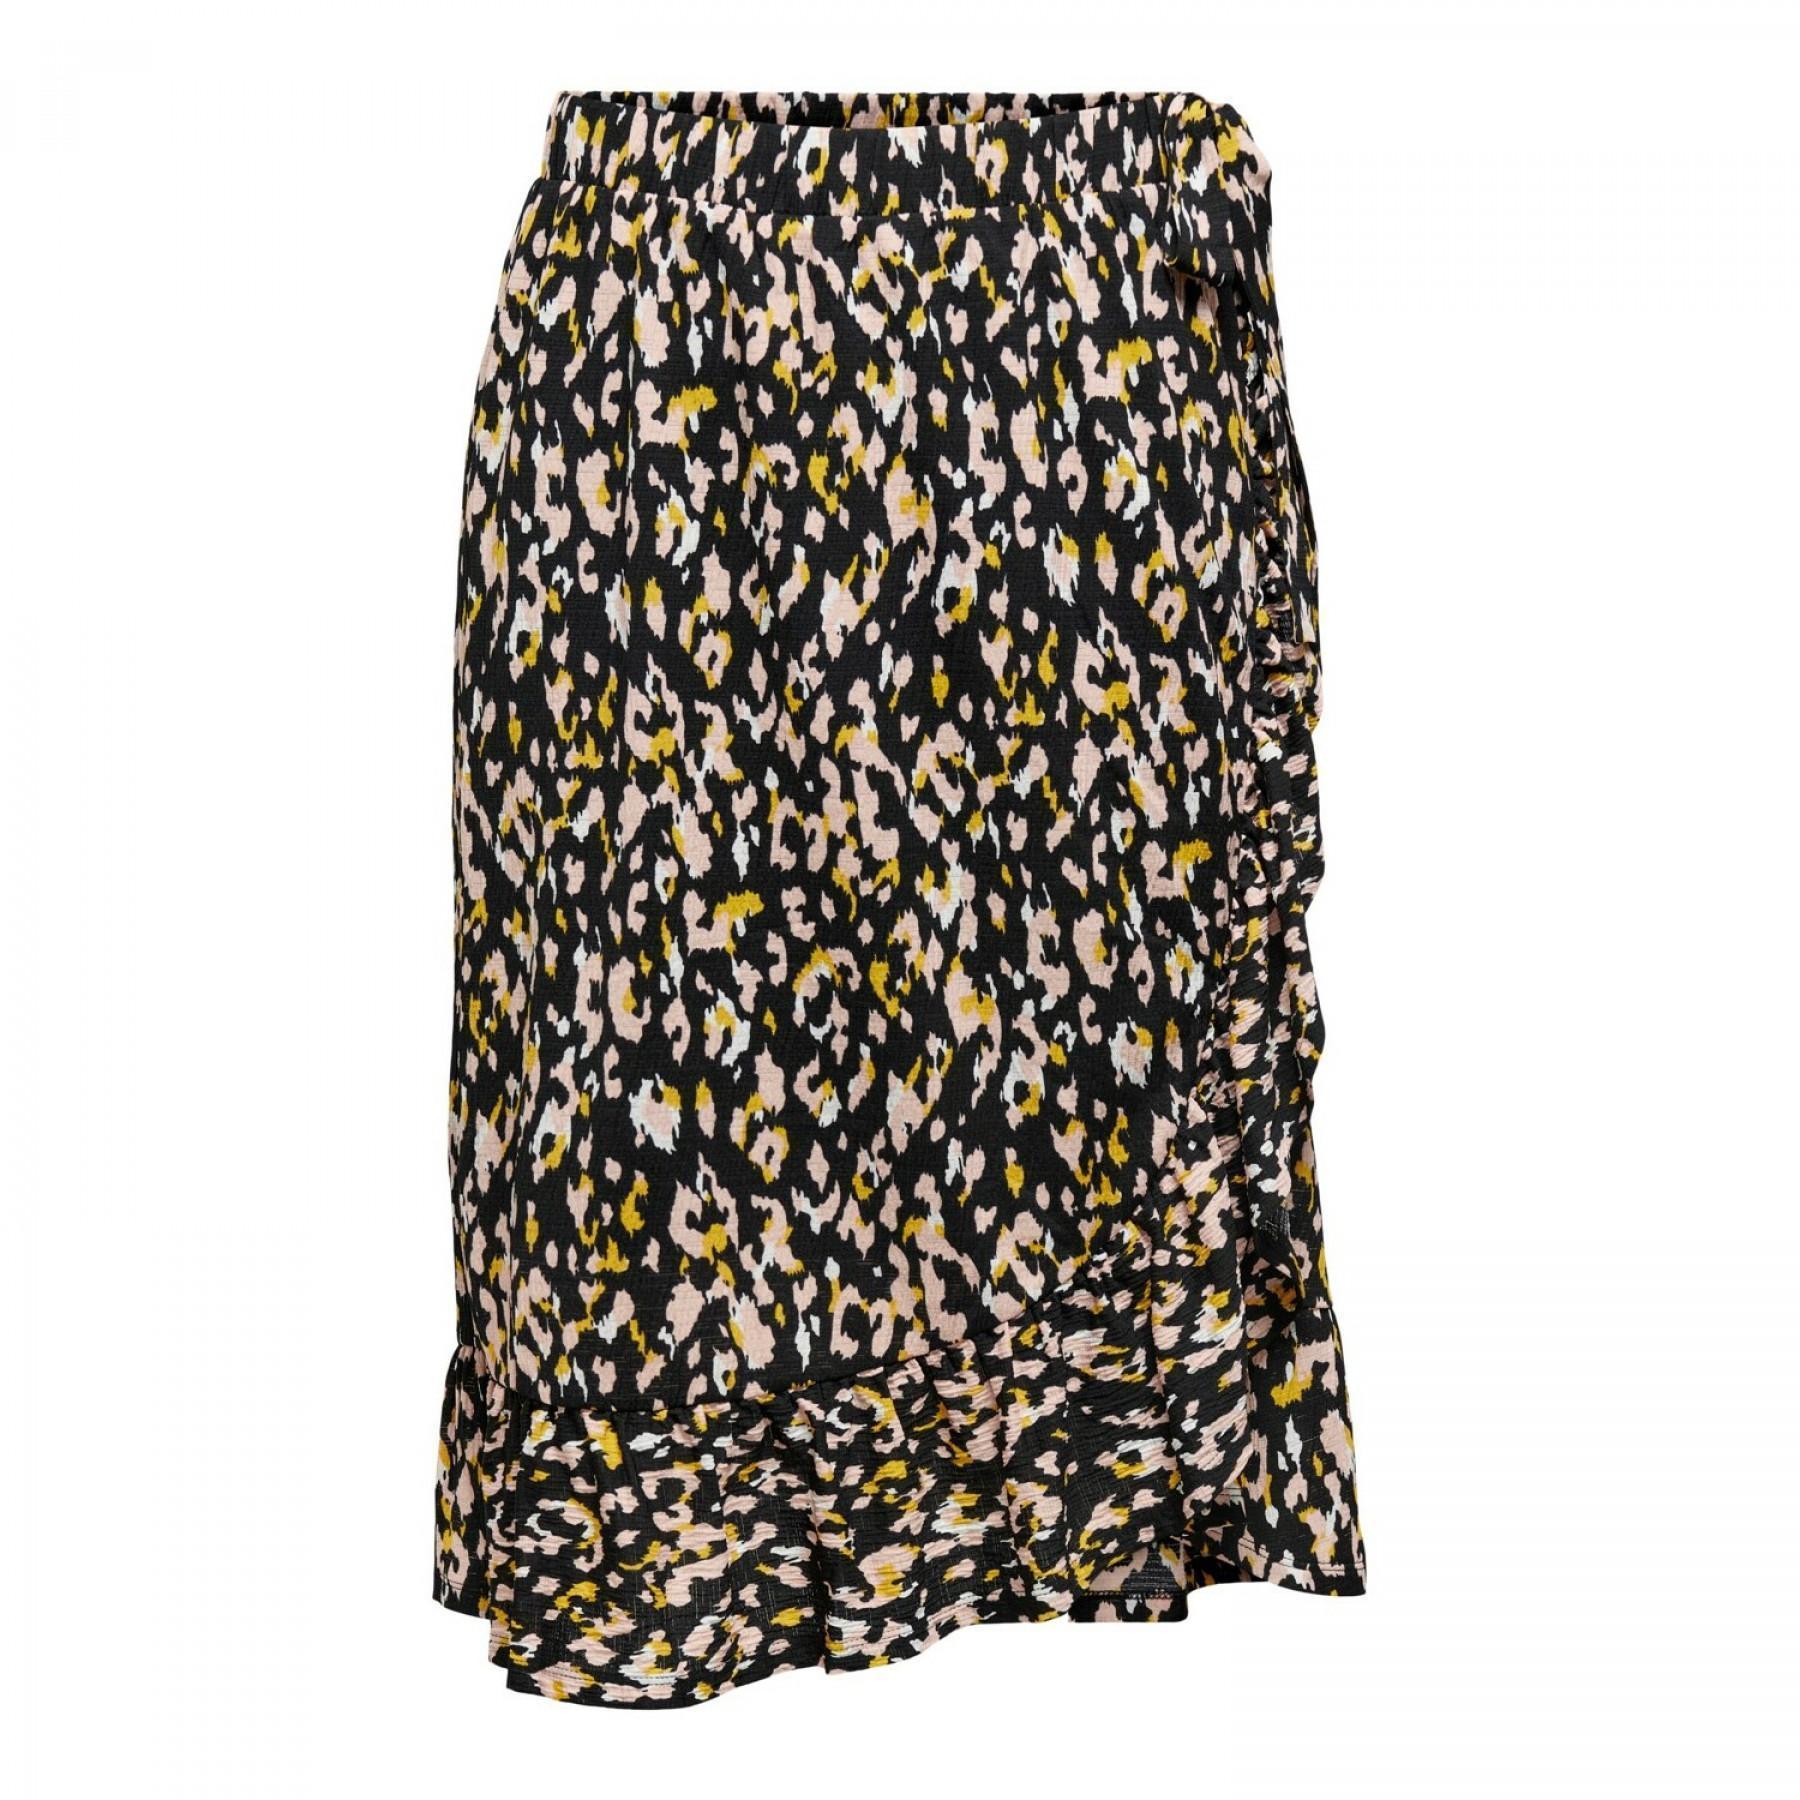 Women's skirt Only onlpella midi